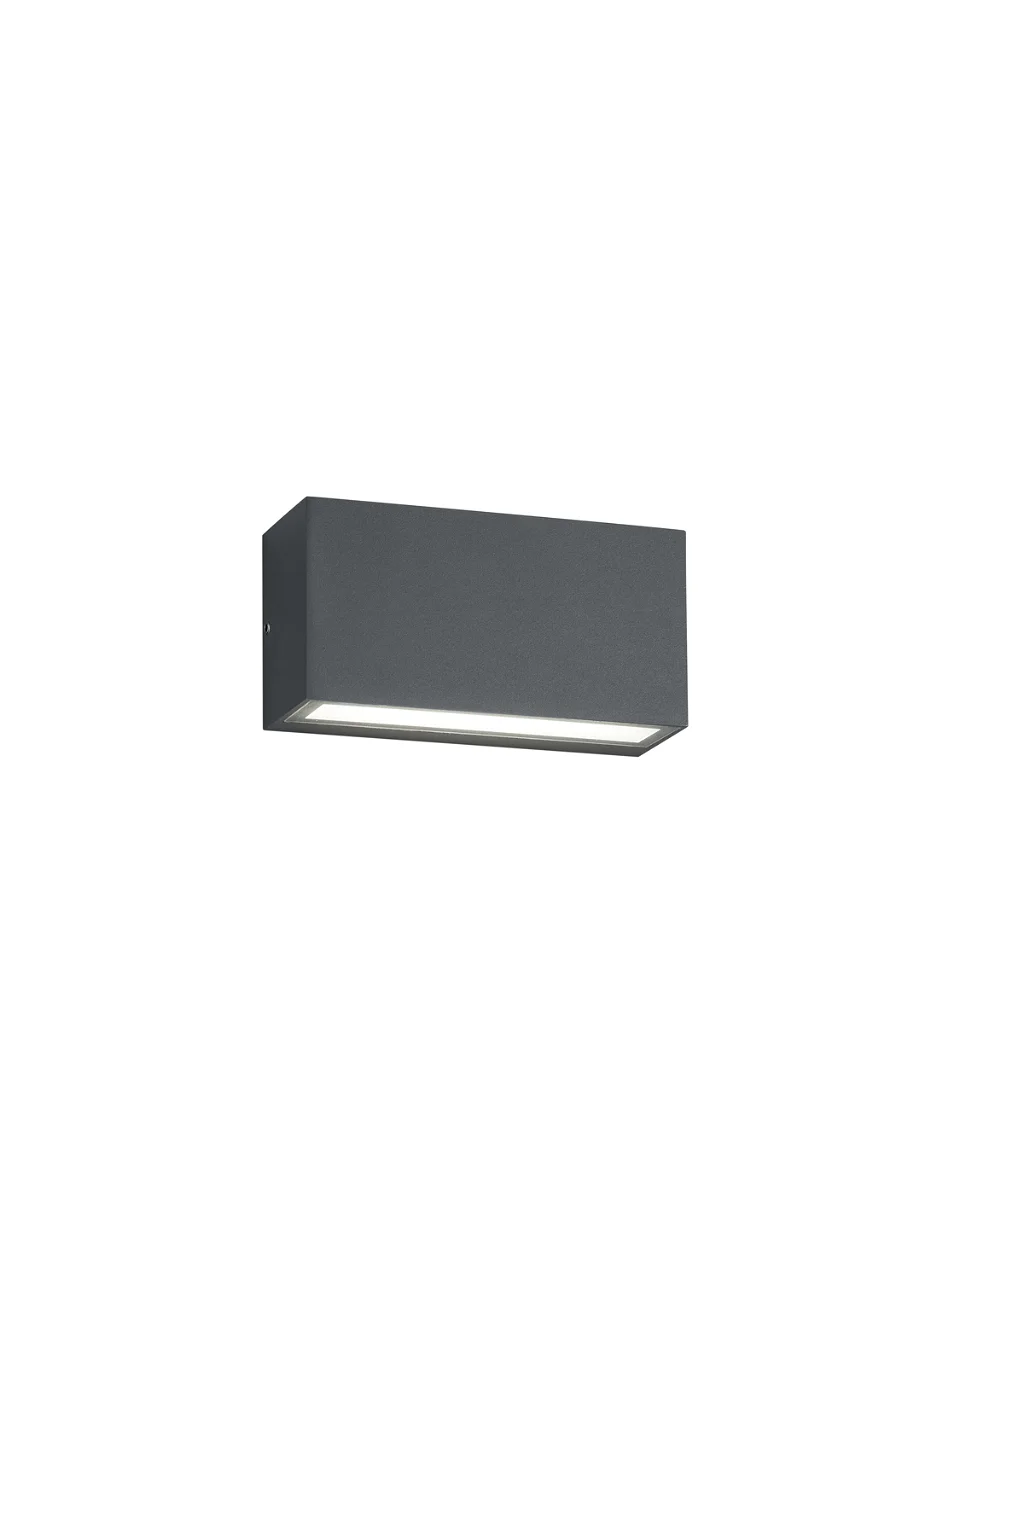 Sieninis LED lauko šviestuvas TRIO, 10 W/IP65/800Lm